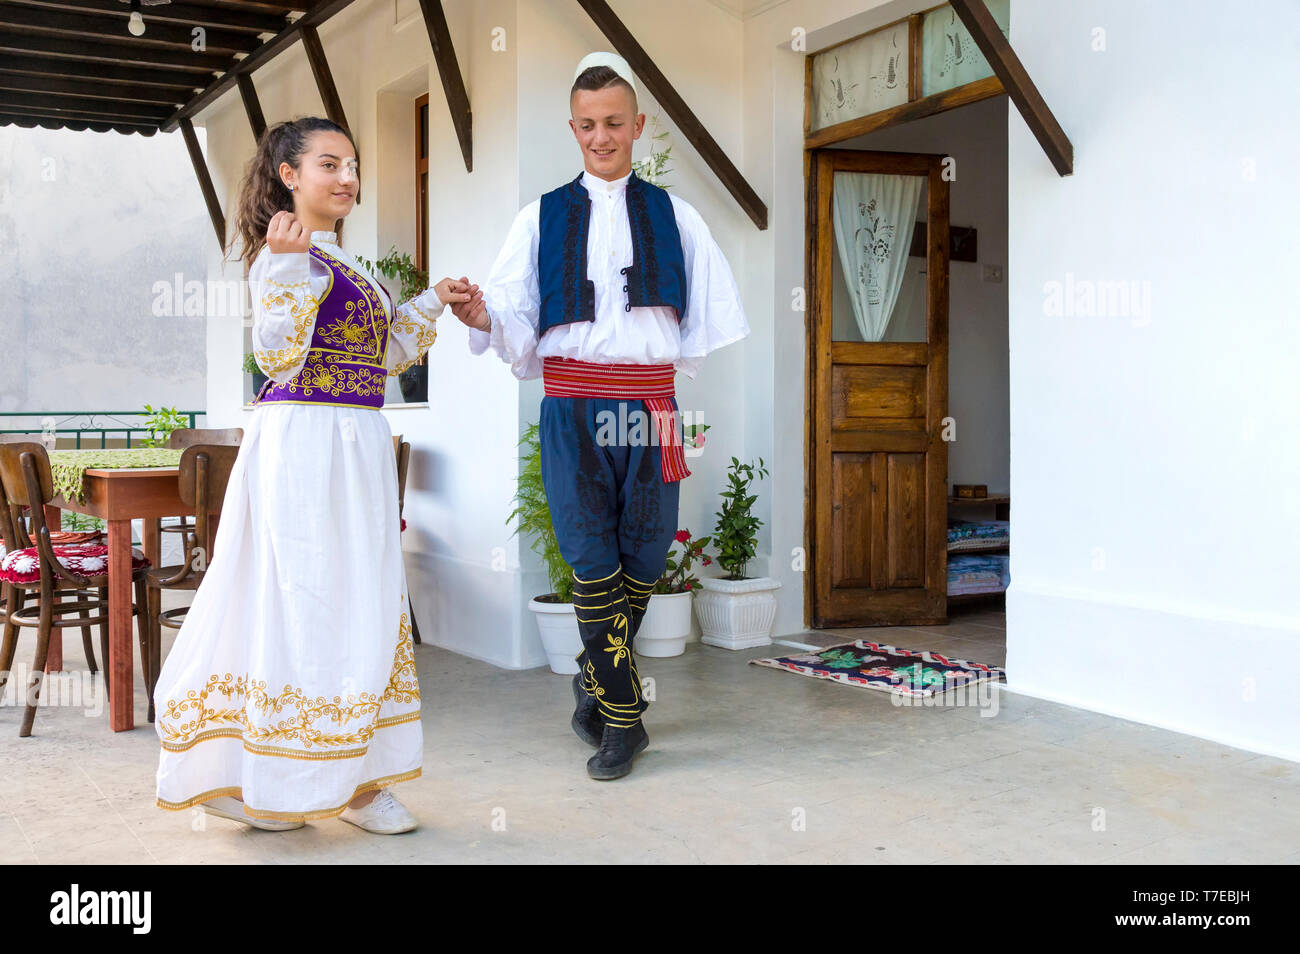 Locale gruppo folkloristico in costumi tradizionali dimostrando nazionale di danza albanese, Berat, Albania Foto Stock